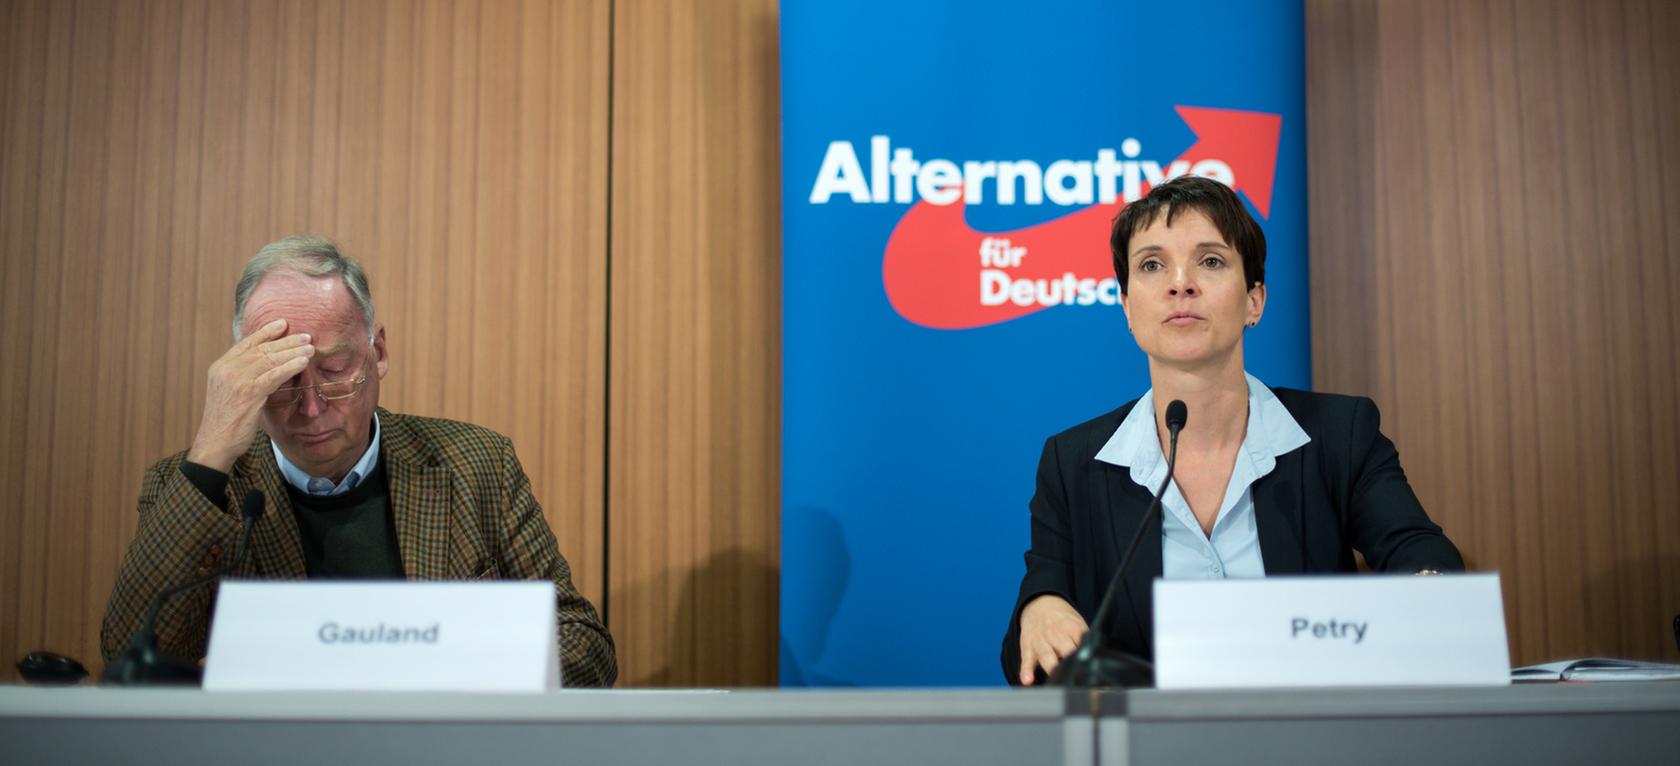 Frauke Petry (r), Bundesvorsitzende der Partei Alternative für Deutschland (AfD) und Alexander Gauland, stellvertretender Sprecher des Bundesvorstands der Partei, kündigten rechtliche Schritte gegen Bundeskanzlerin Angela Merkel an.